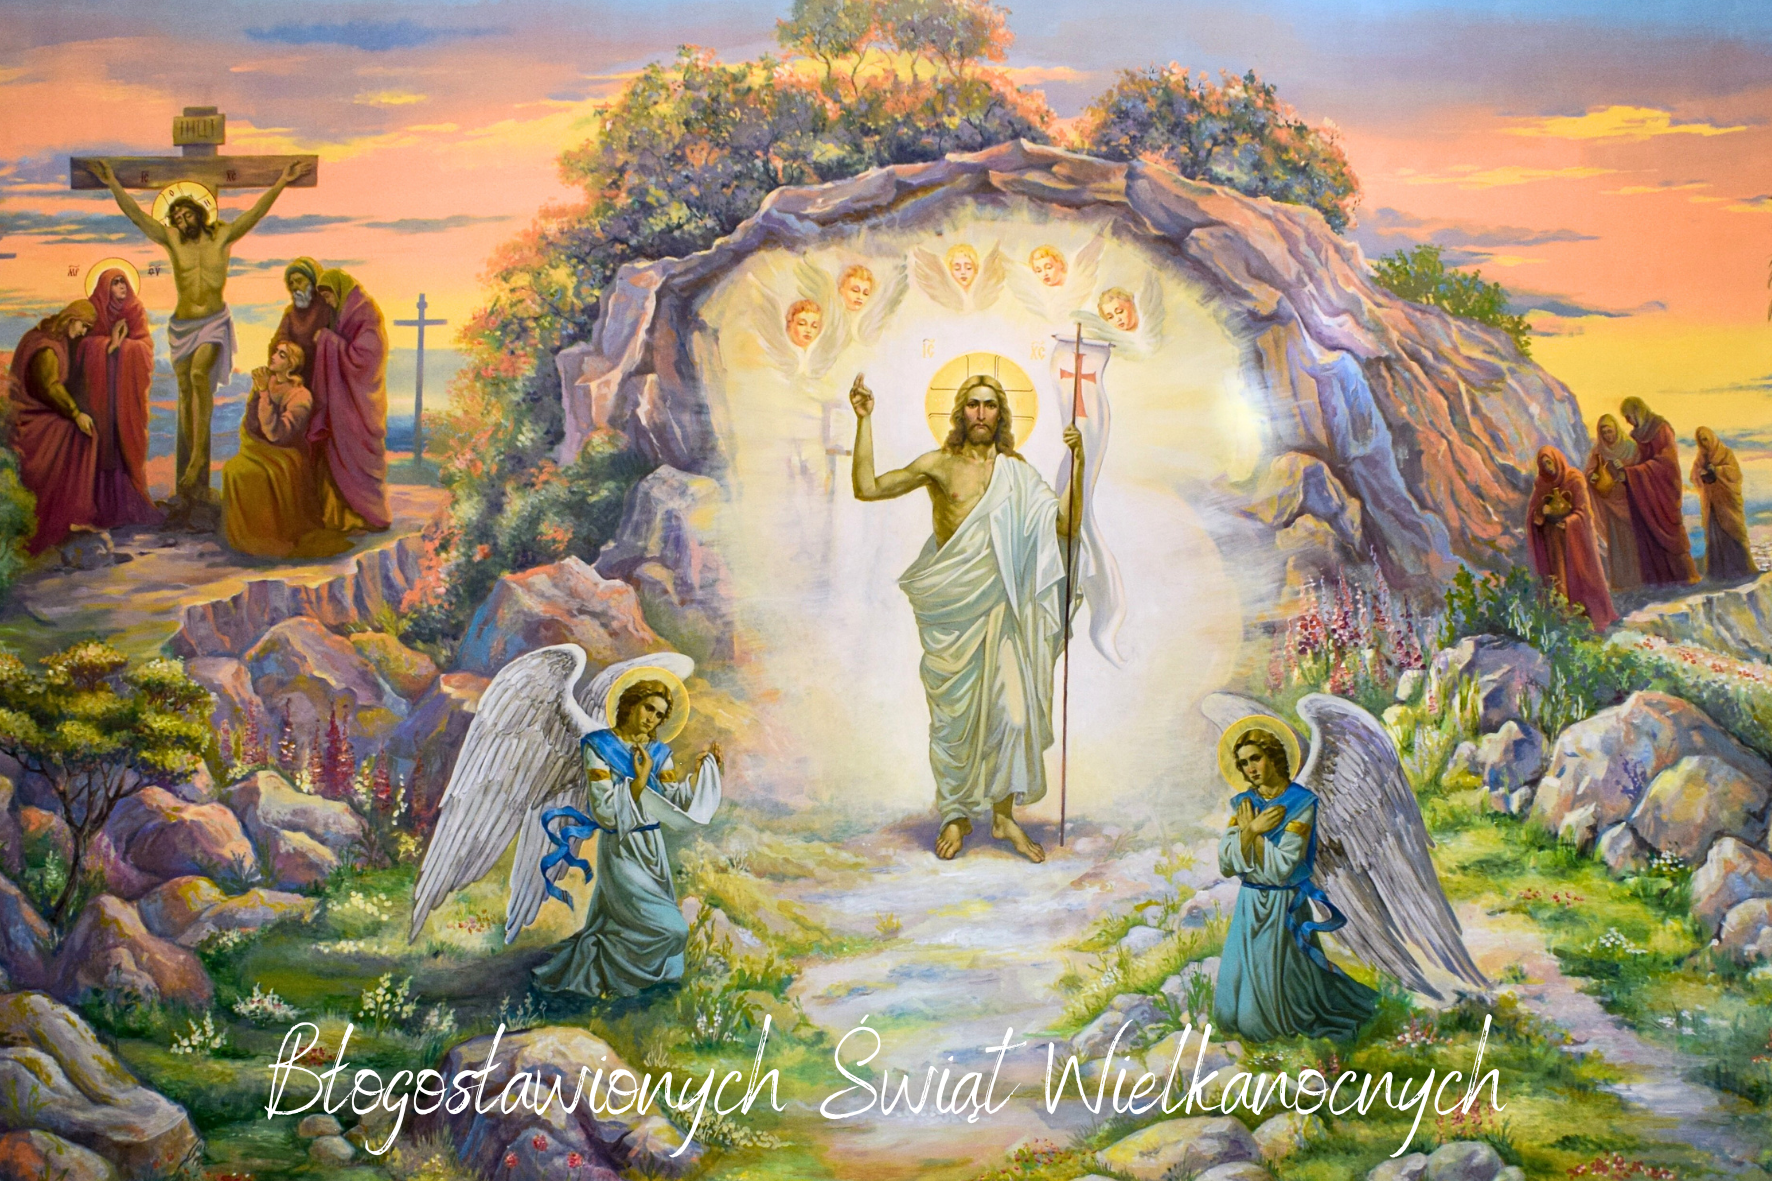 Obraz przedstawiający religijną scenę Zmartwychwstania; postać Chrystusa wychodzi z grobu, otoczony aniołami, świadkami i napisem ze świątecznym pozdrowieniem.